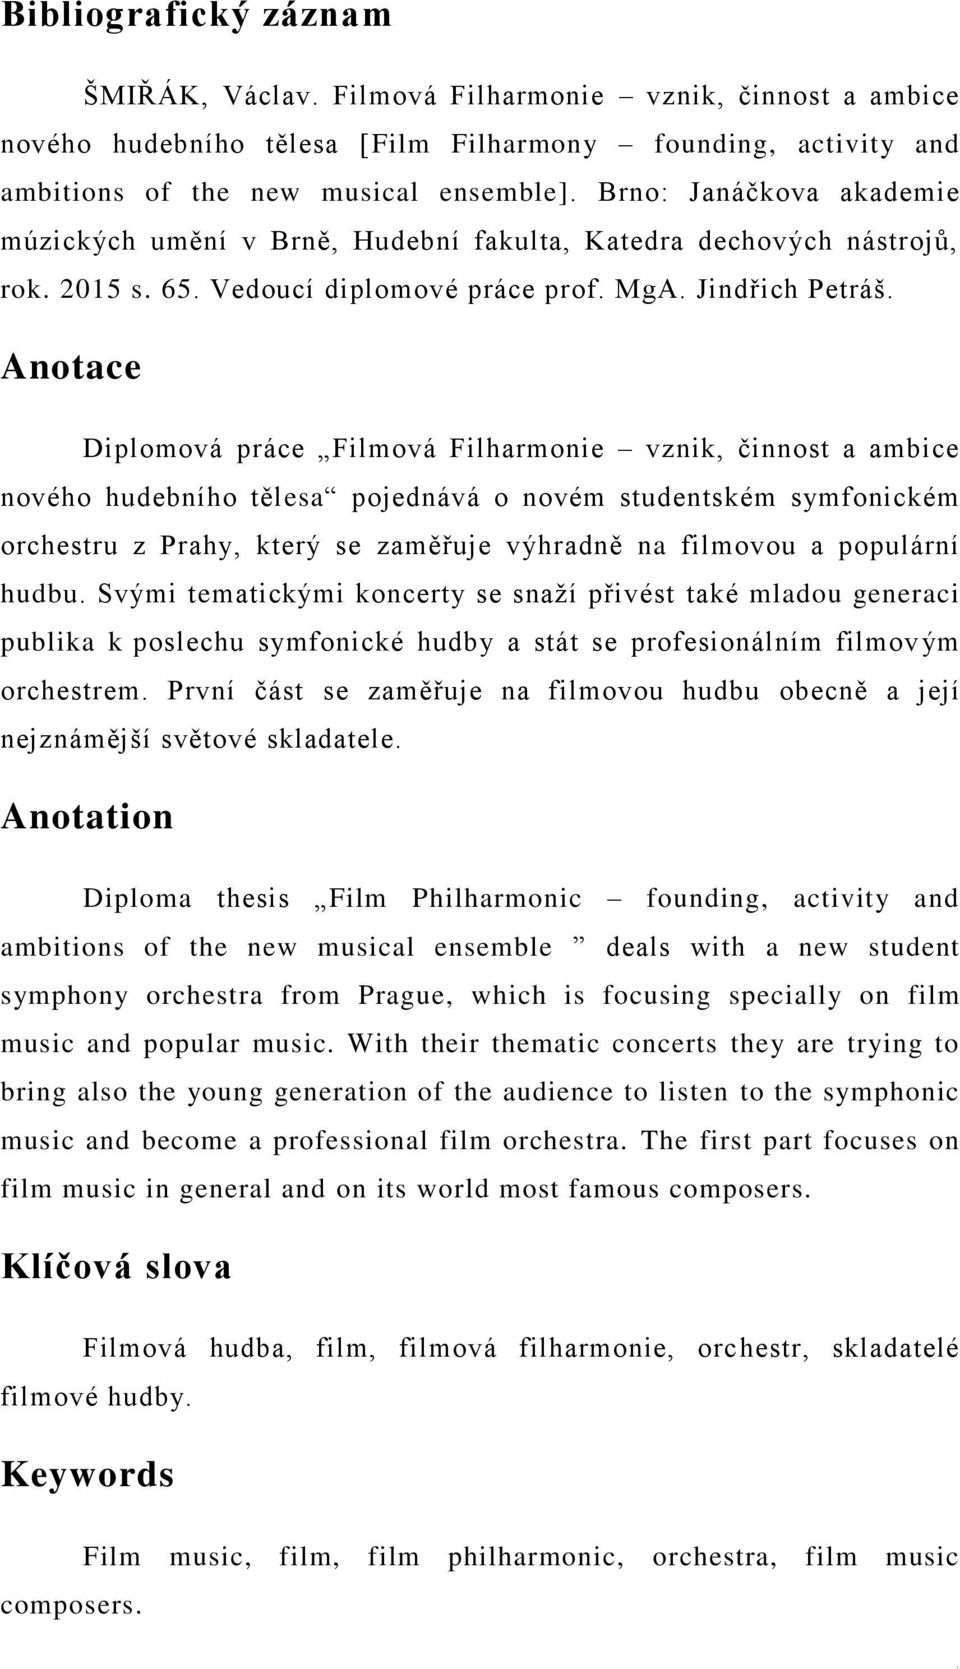 Anotace Diplomová práce Filmová Filharmonie vznik, činnost a ambice nového hudebního tělesa pojednává o novém studentském symfonickém orchestru z Prahy, který se zaměřuje výhradně na filmovou a